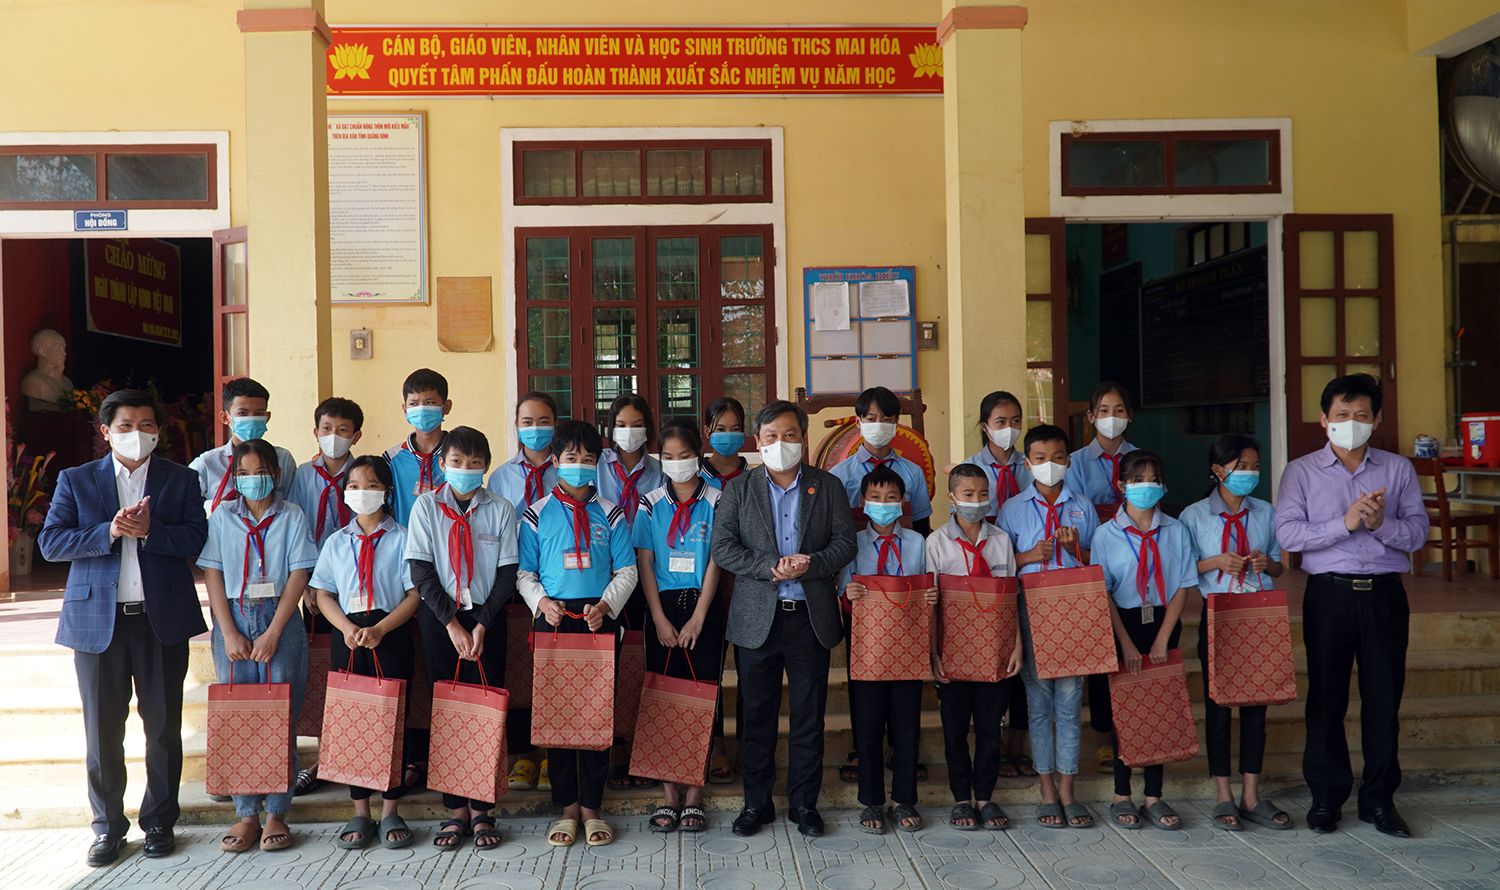 Các đồng chí trong đoàn công tác tặng quà cho học sinh Trường THCS Mai Hóa.